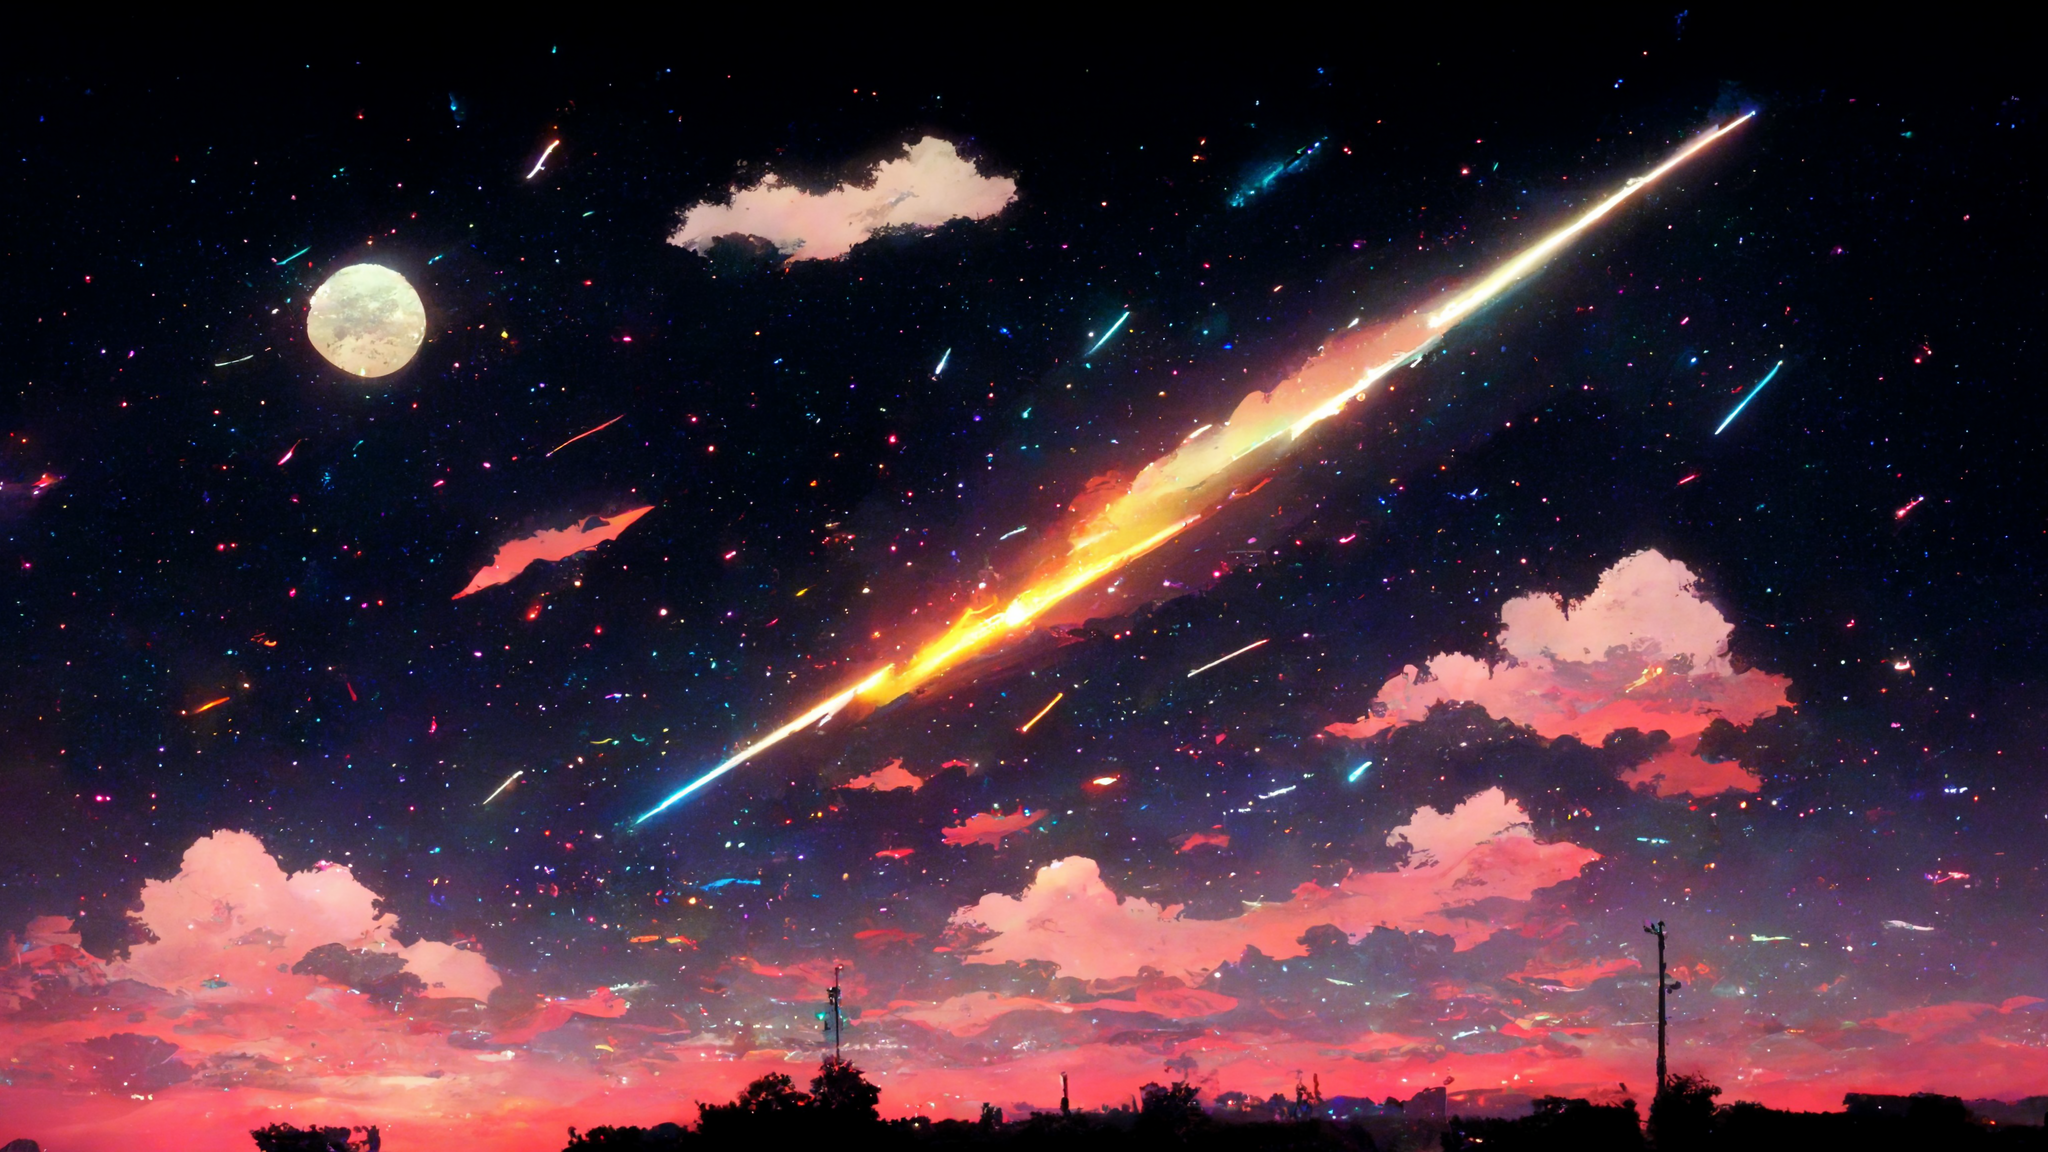 Mid Journey is an amazing wallpaper generator Meteor night sky